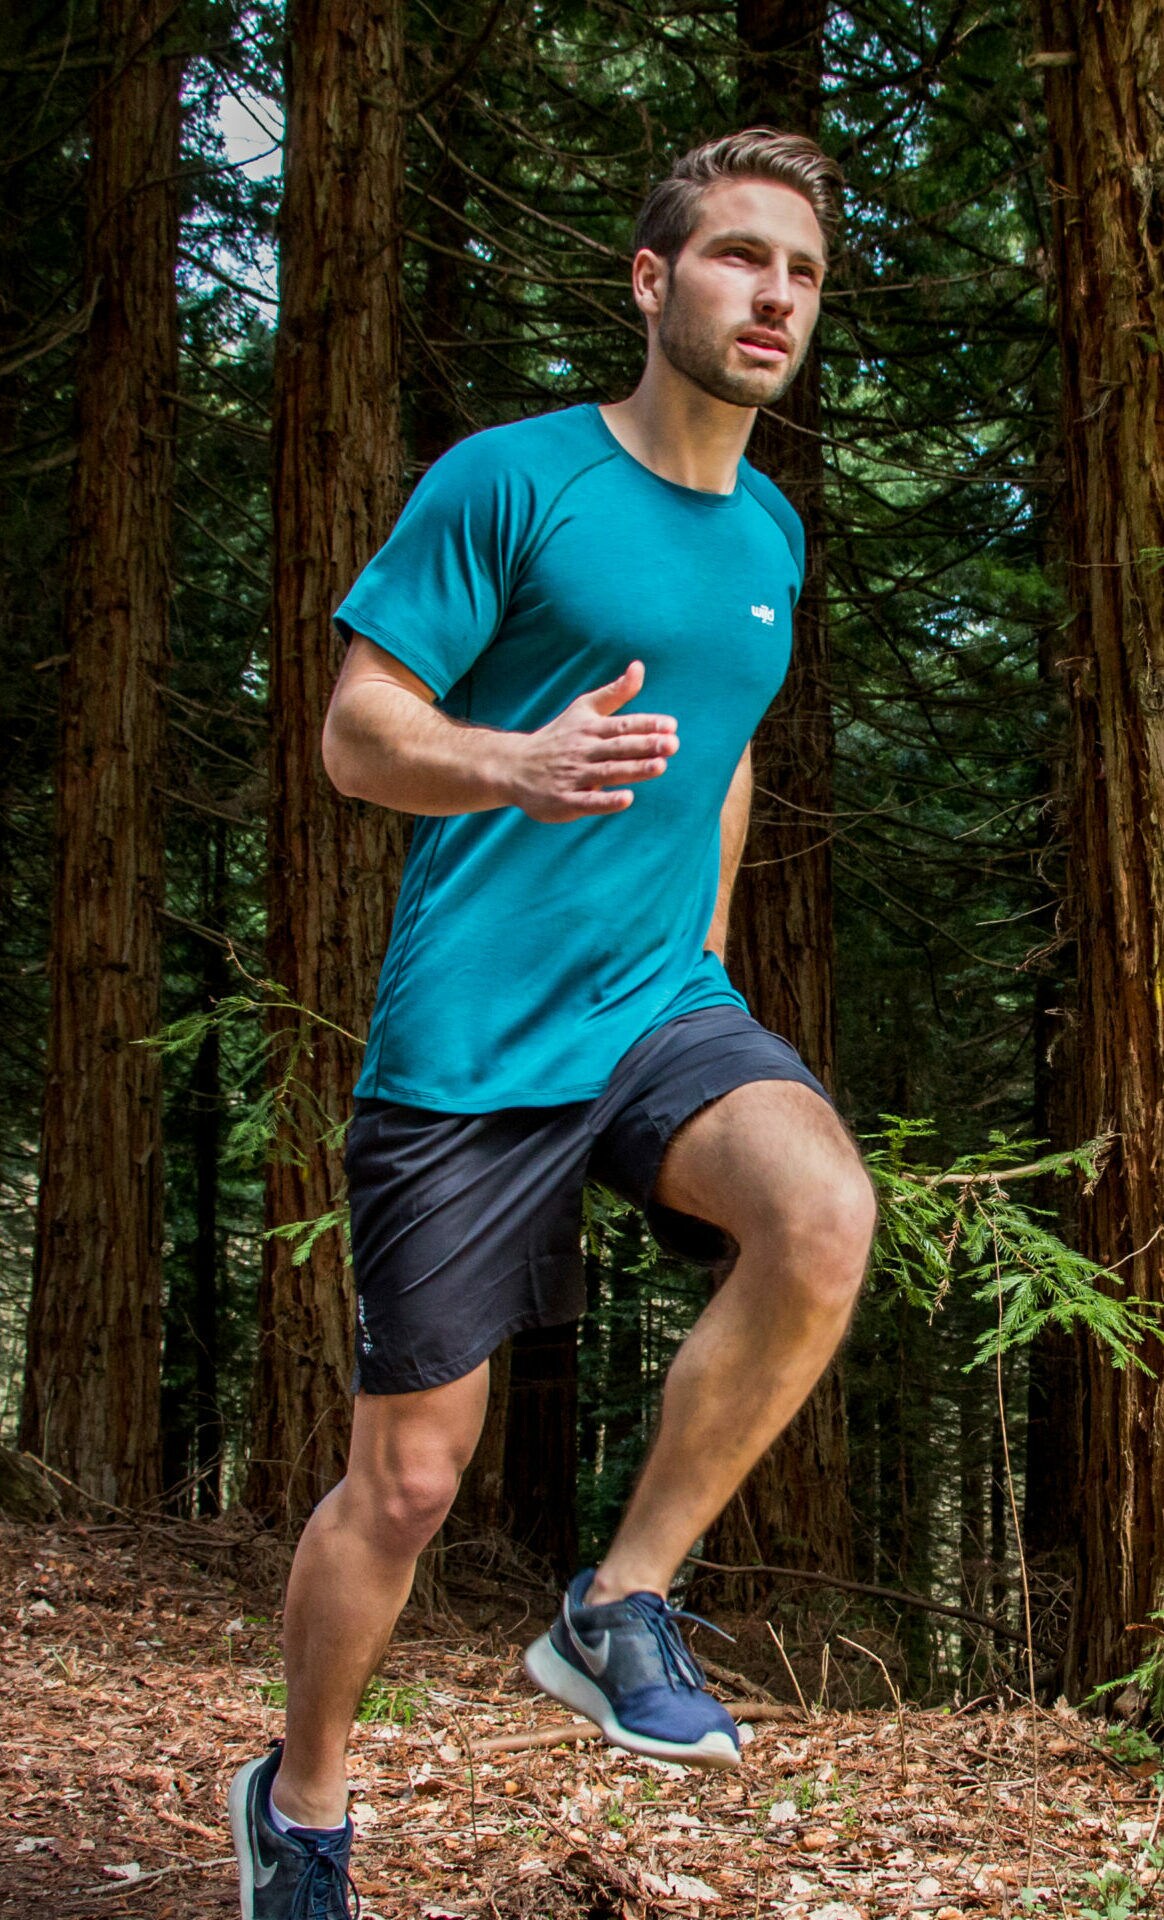 Mann joggt in Sportbekleidung durch einen Wald